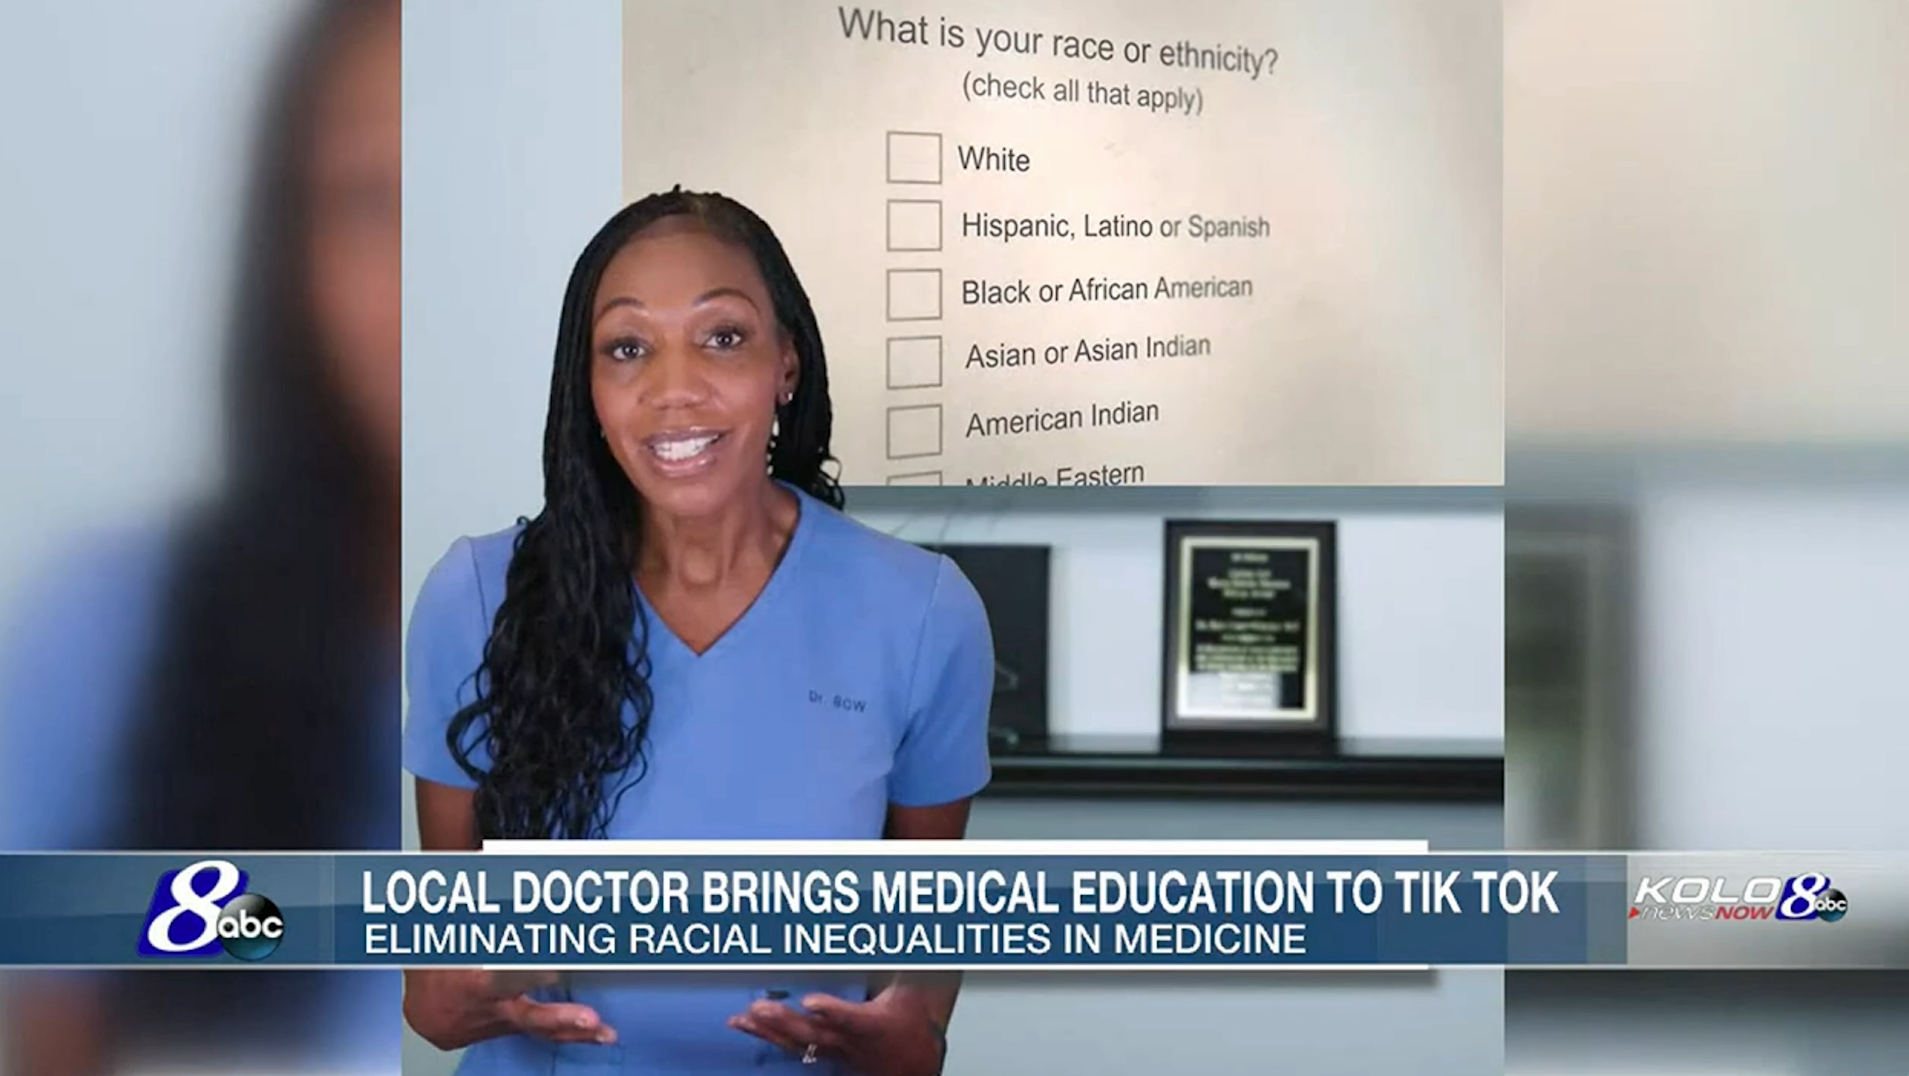 ABC News – TikTok Doc, Dr. BCW